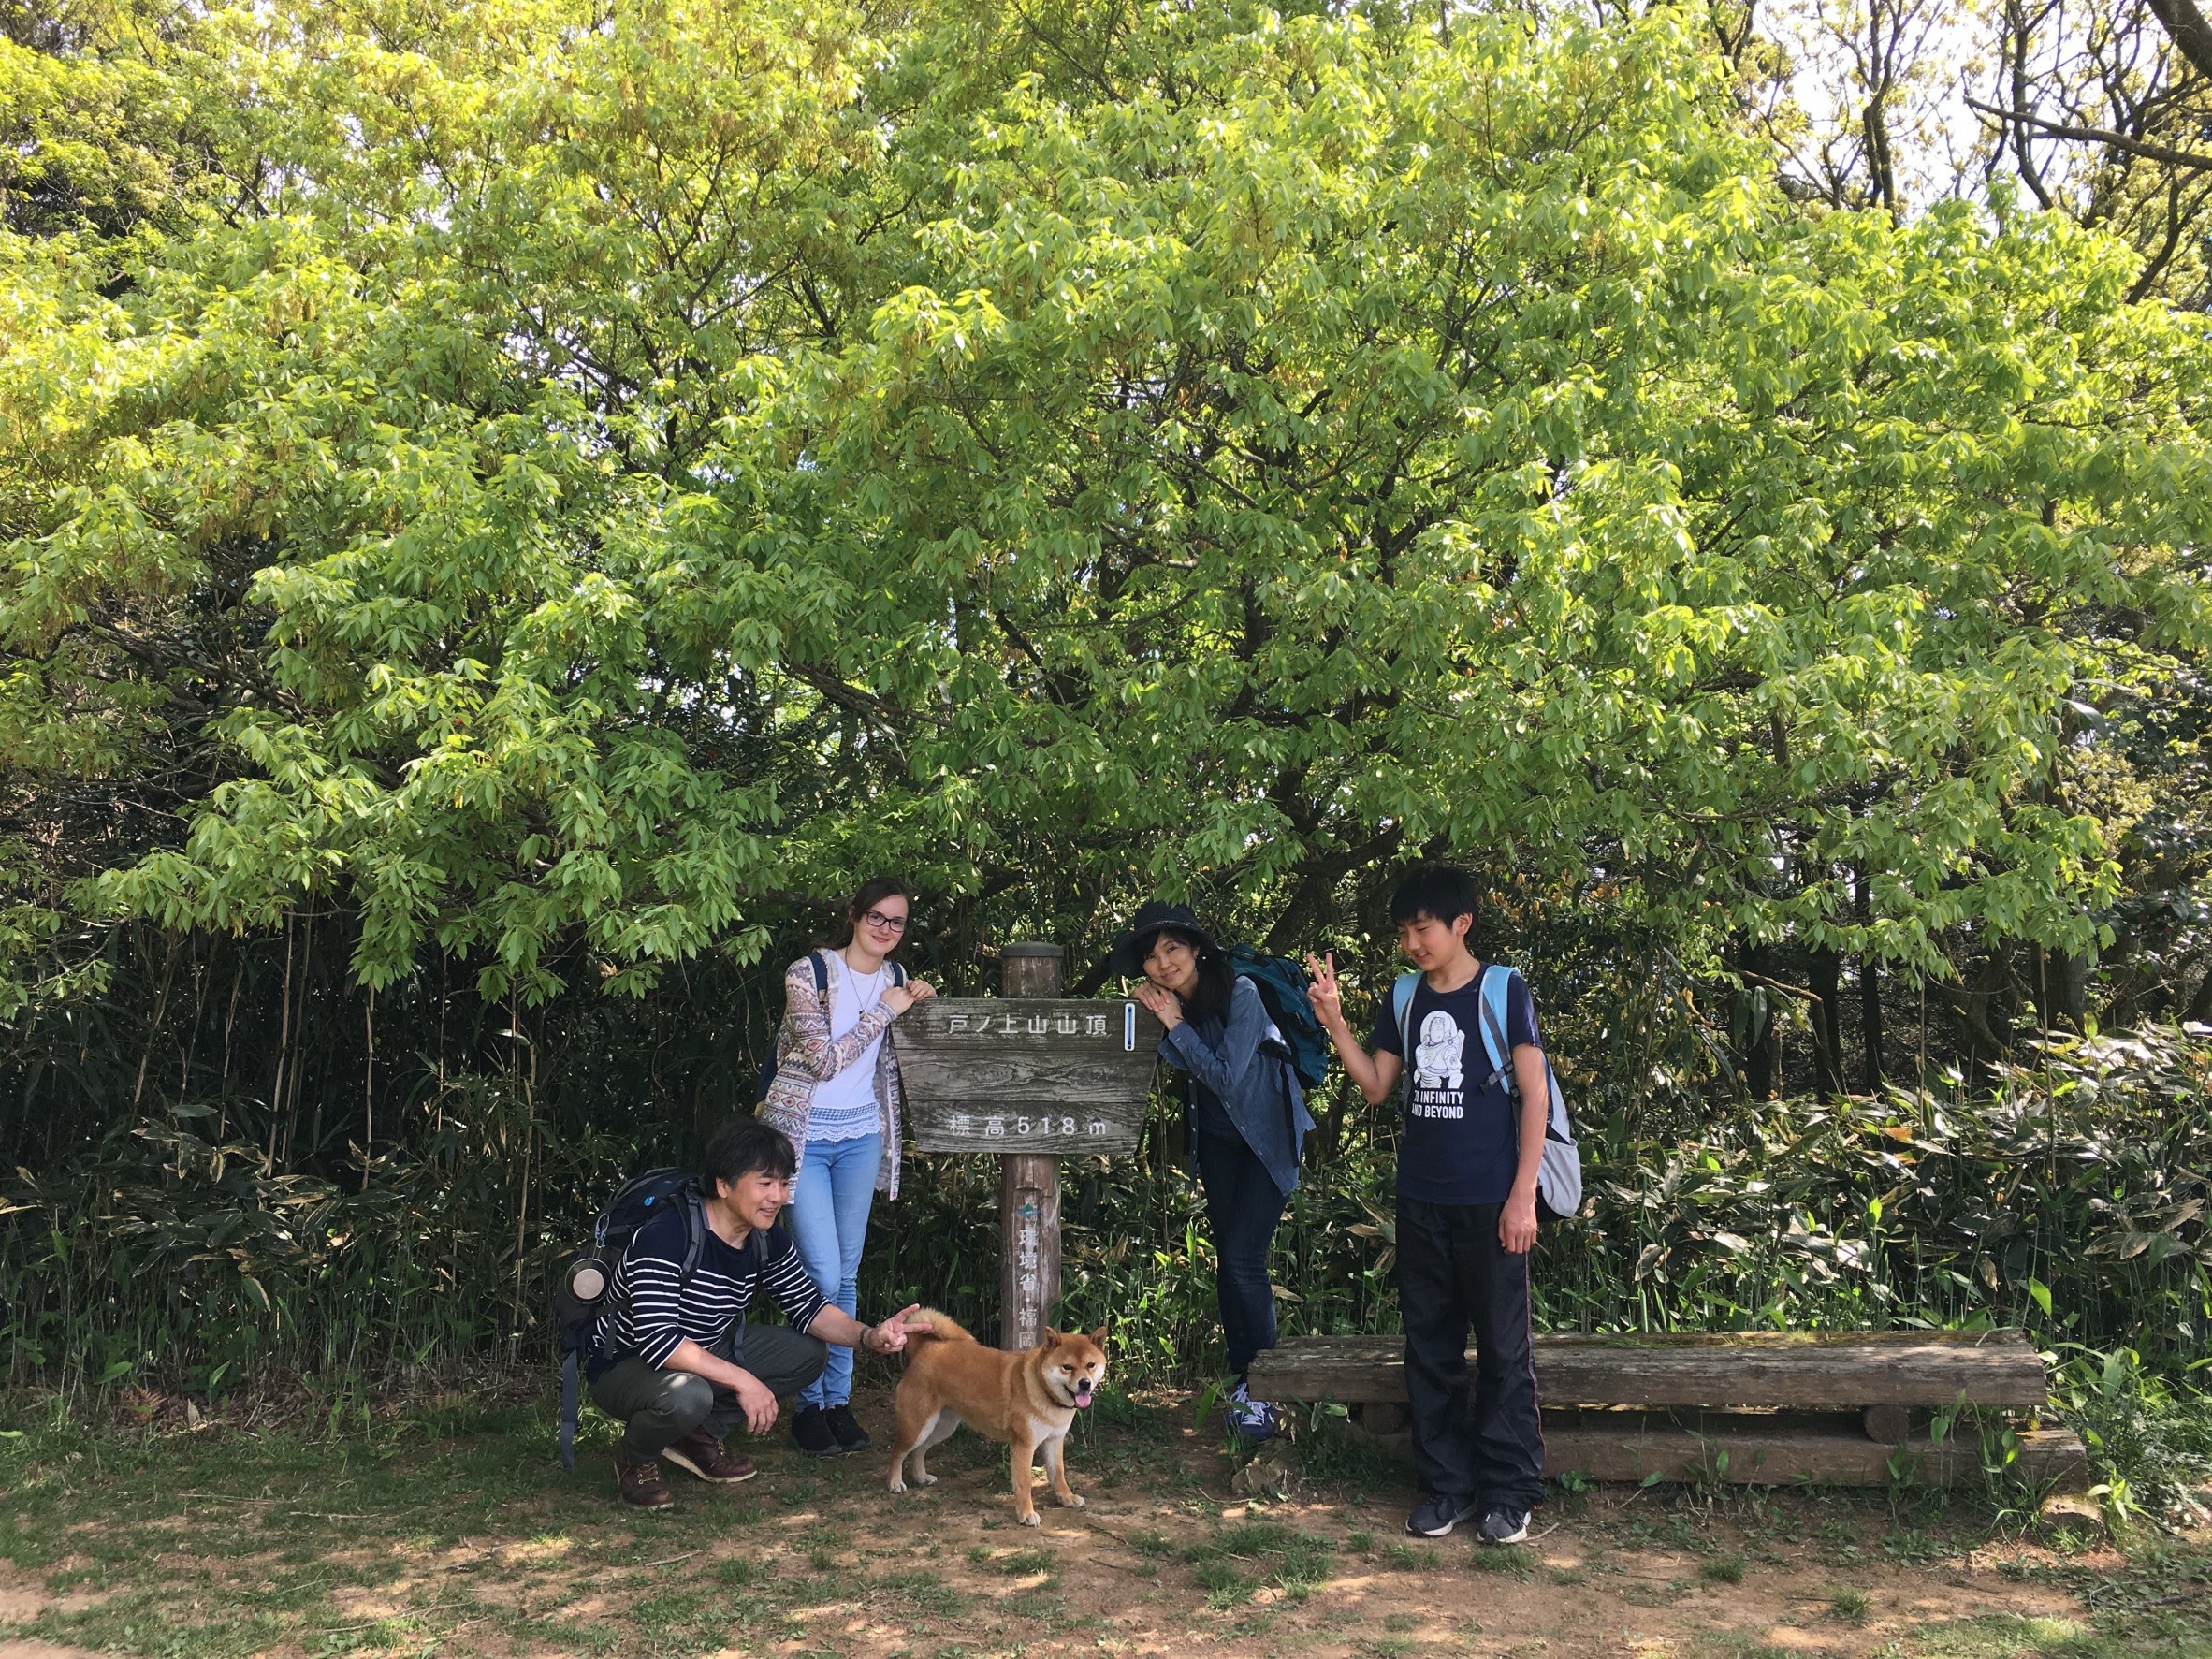 Familie unter einem Baum mit Chiba ins Hund